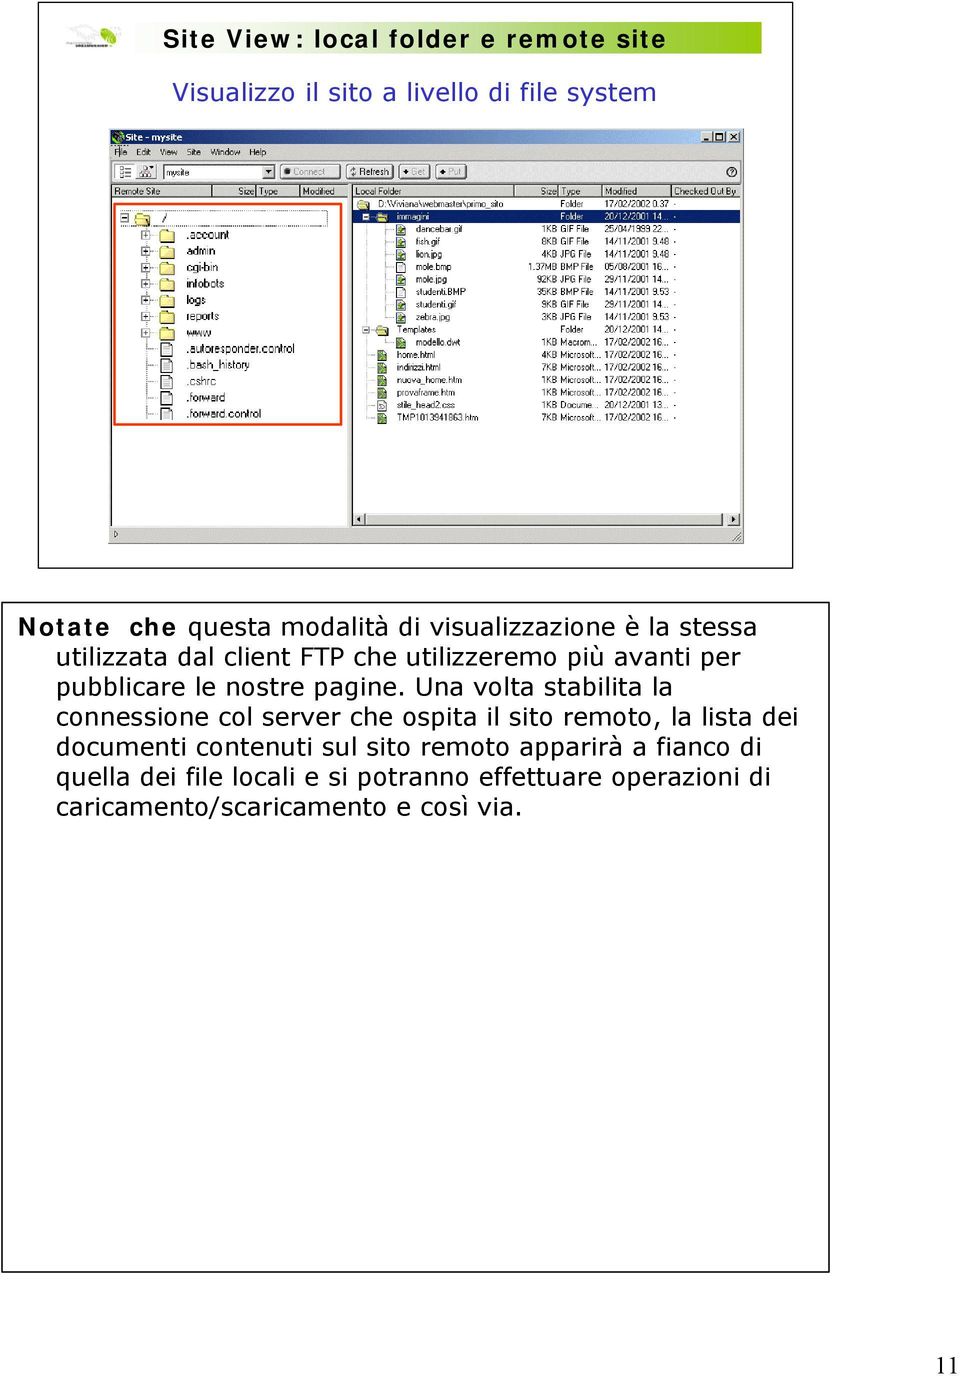 Una volta stabilita la connessione col server che ospita il sito remoto, la lista dei documenti contenuti sul sito